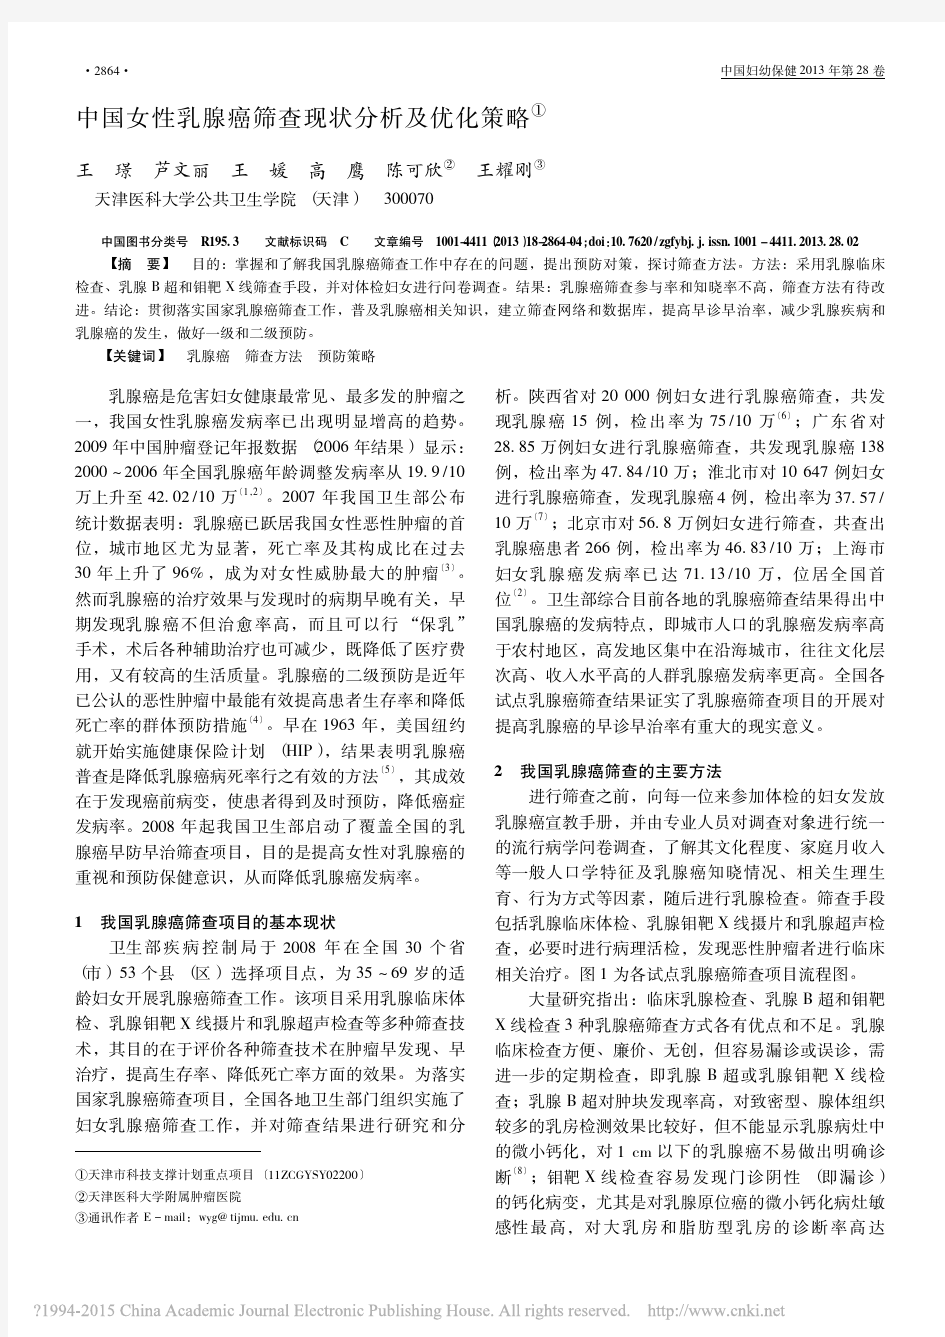 中国女性乳腺癌筛查现状分析及优化策略_王璟